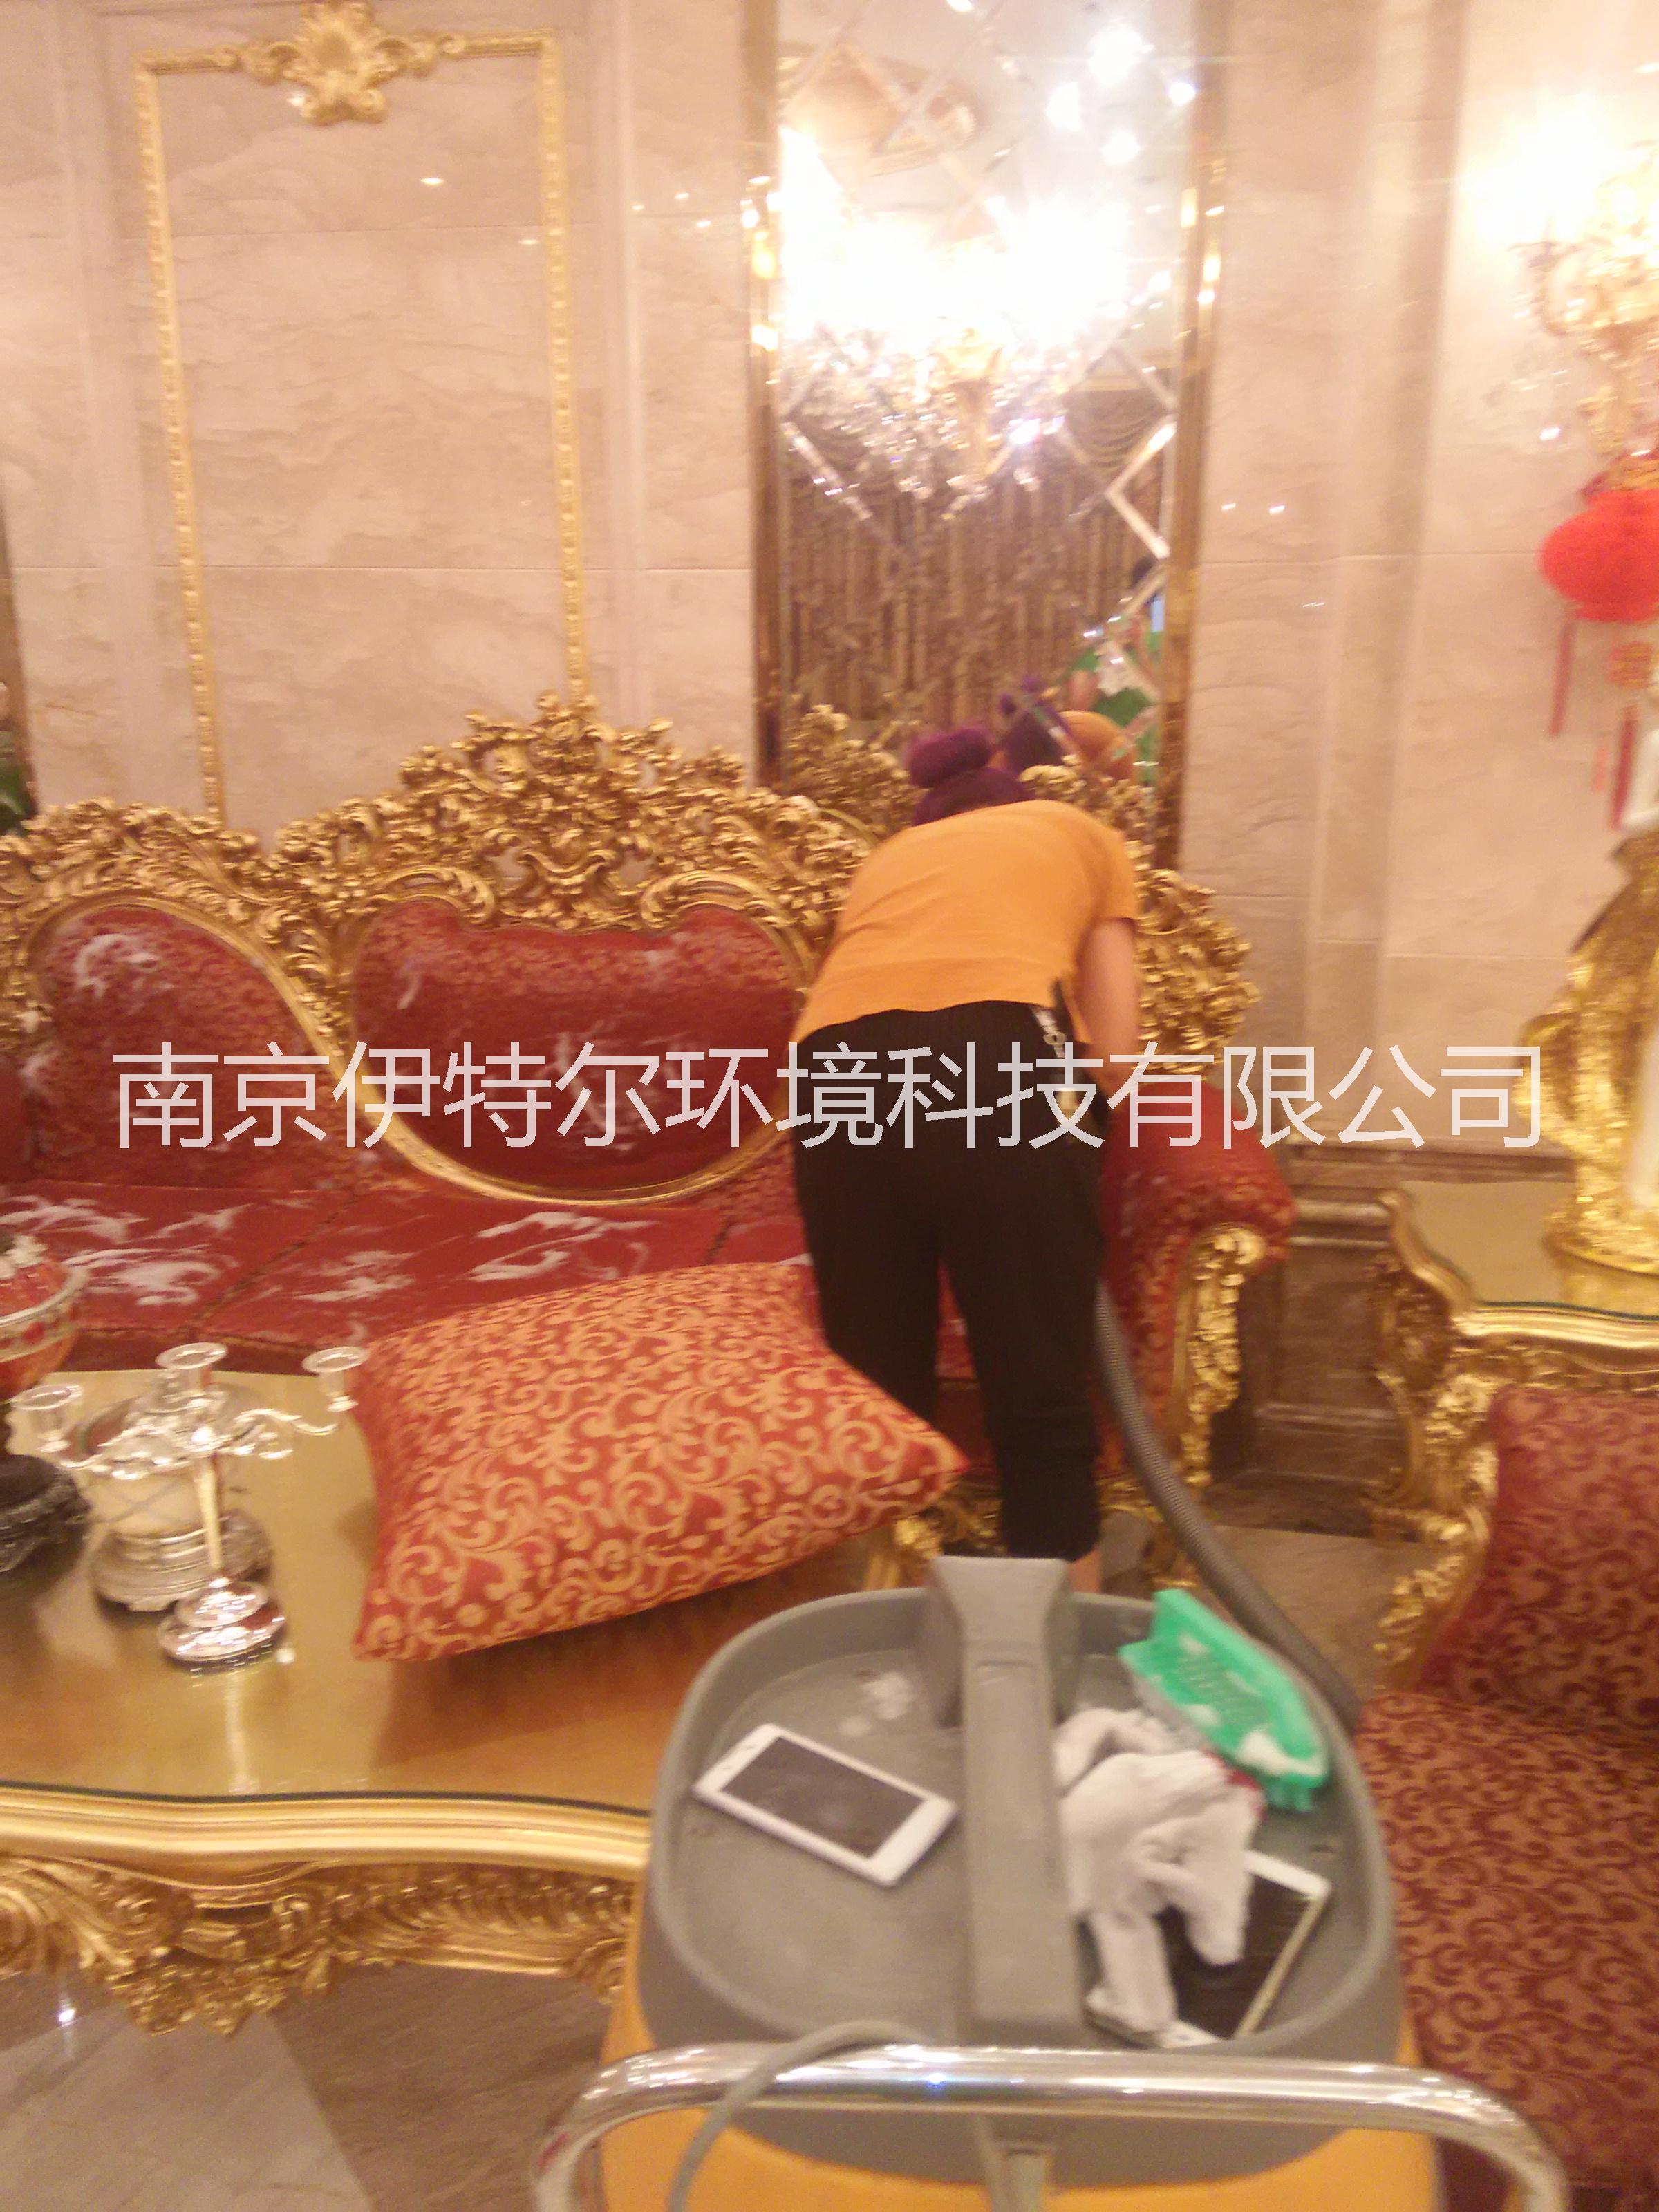 南京清洗沙发公司沙发清洁保养批发